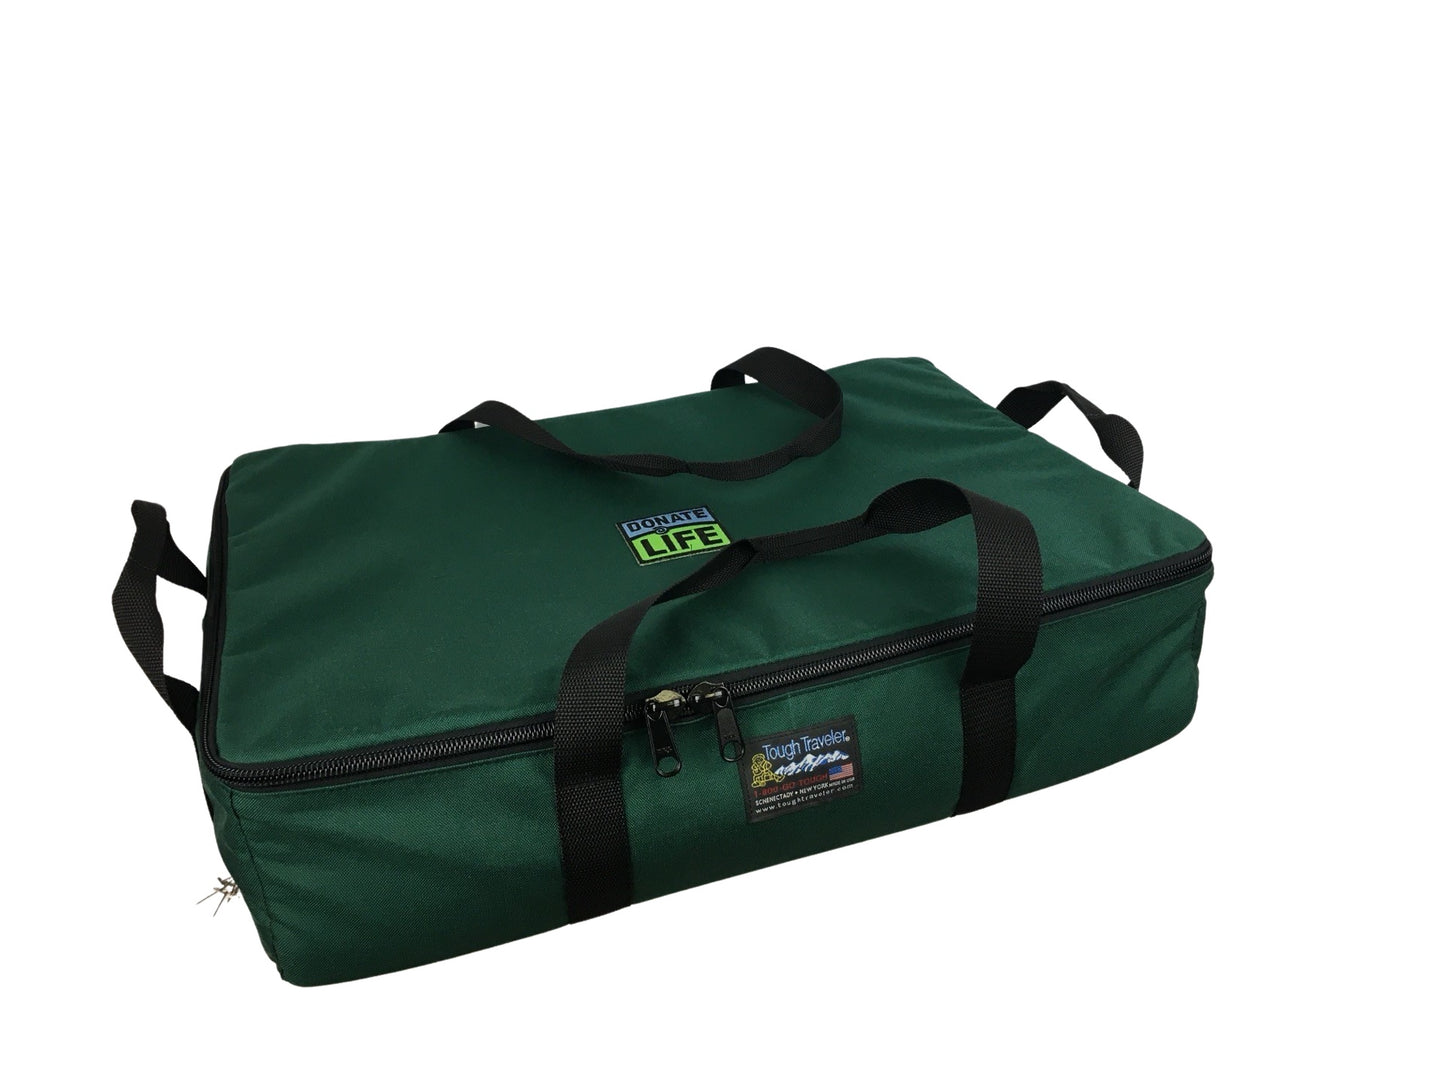 INSTRUMENT BAG: Medical Transport Bag